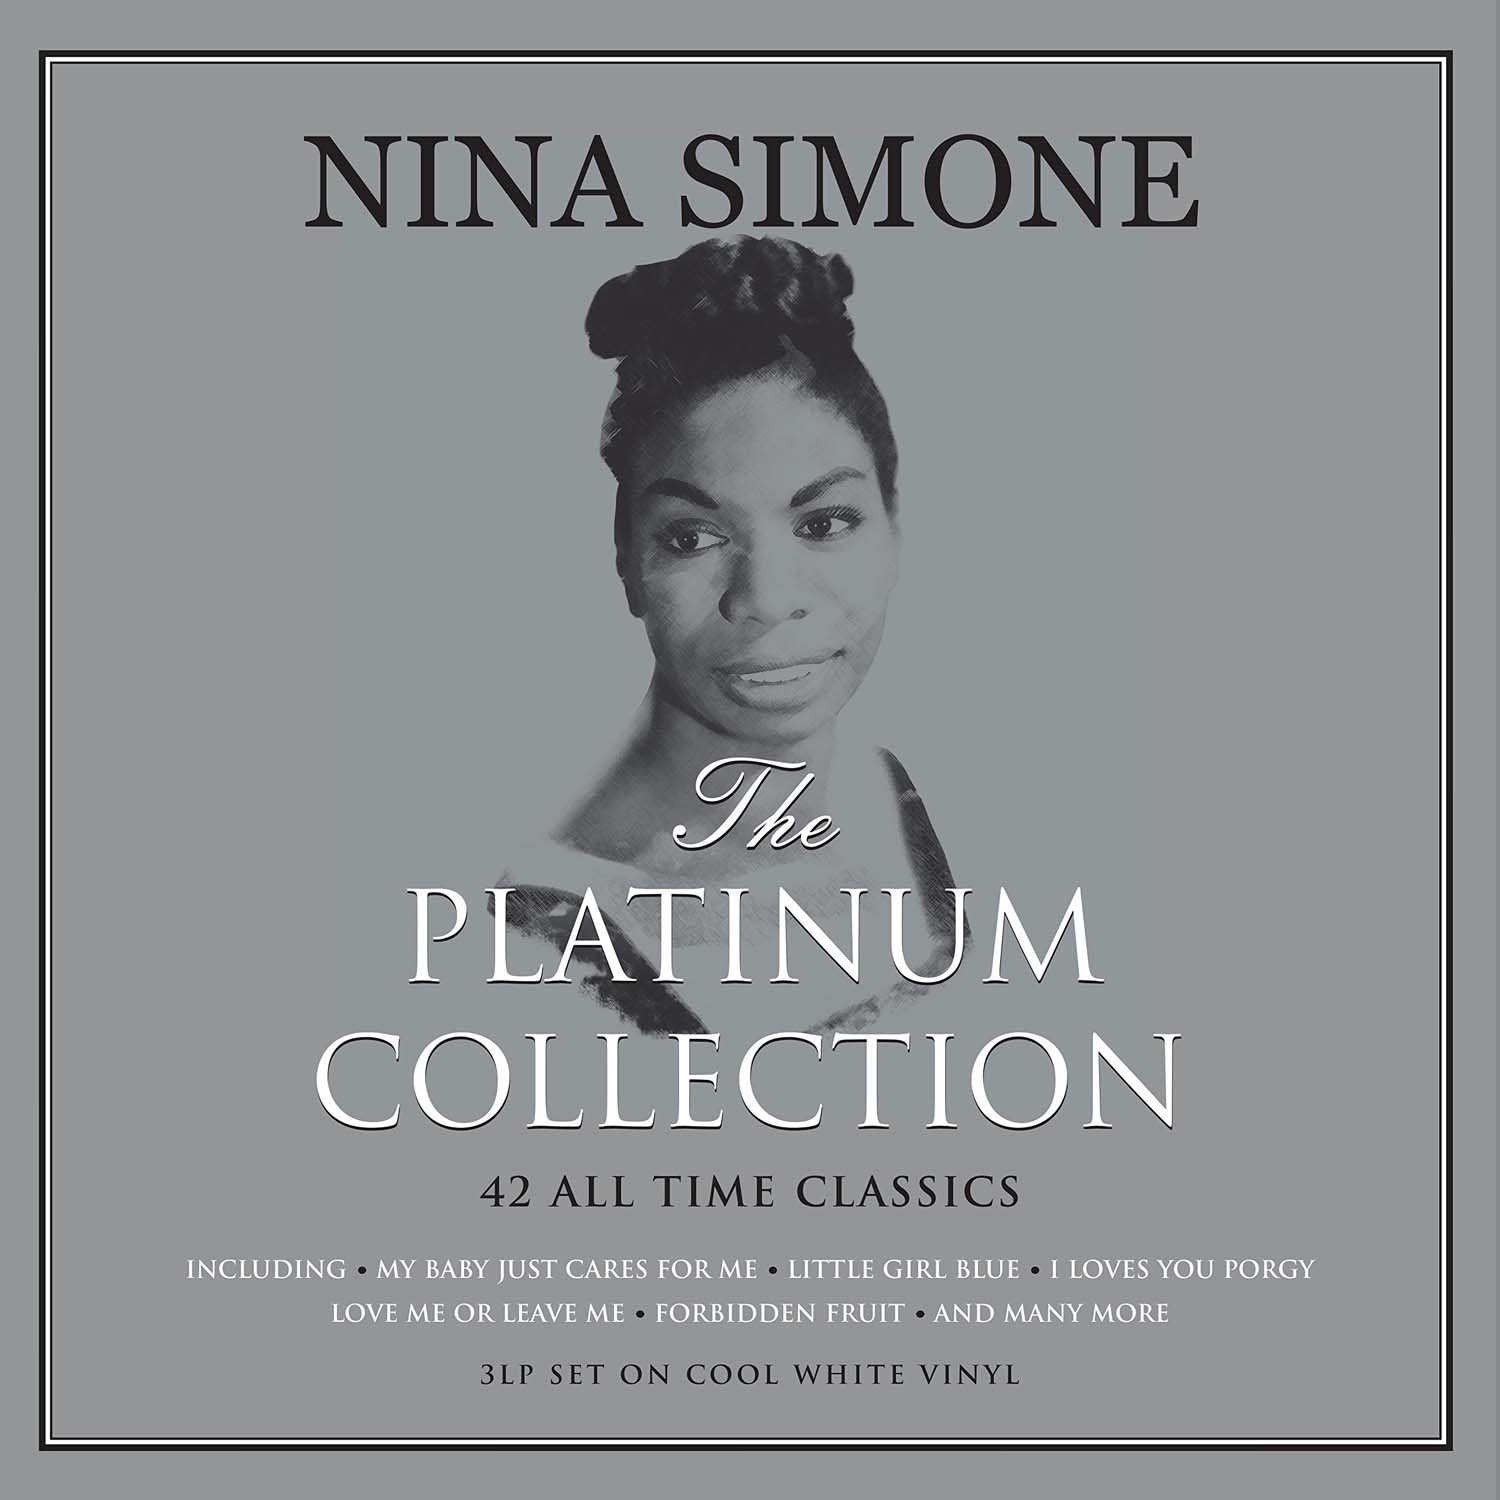 Vinile Nina Simone - The Platinum Collection White Vinyl (3 Lp) NUOVO SIGILLATO, EDIZIONE DEL 06/07/2017 SUBITO DISPONIBILE